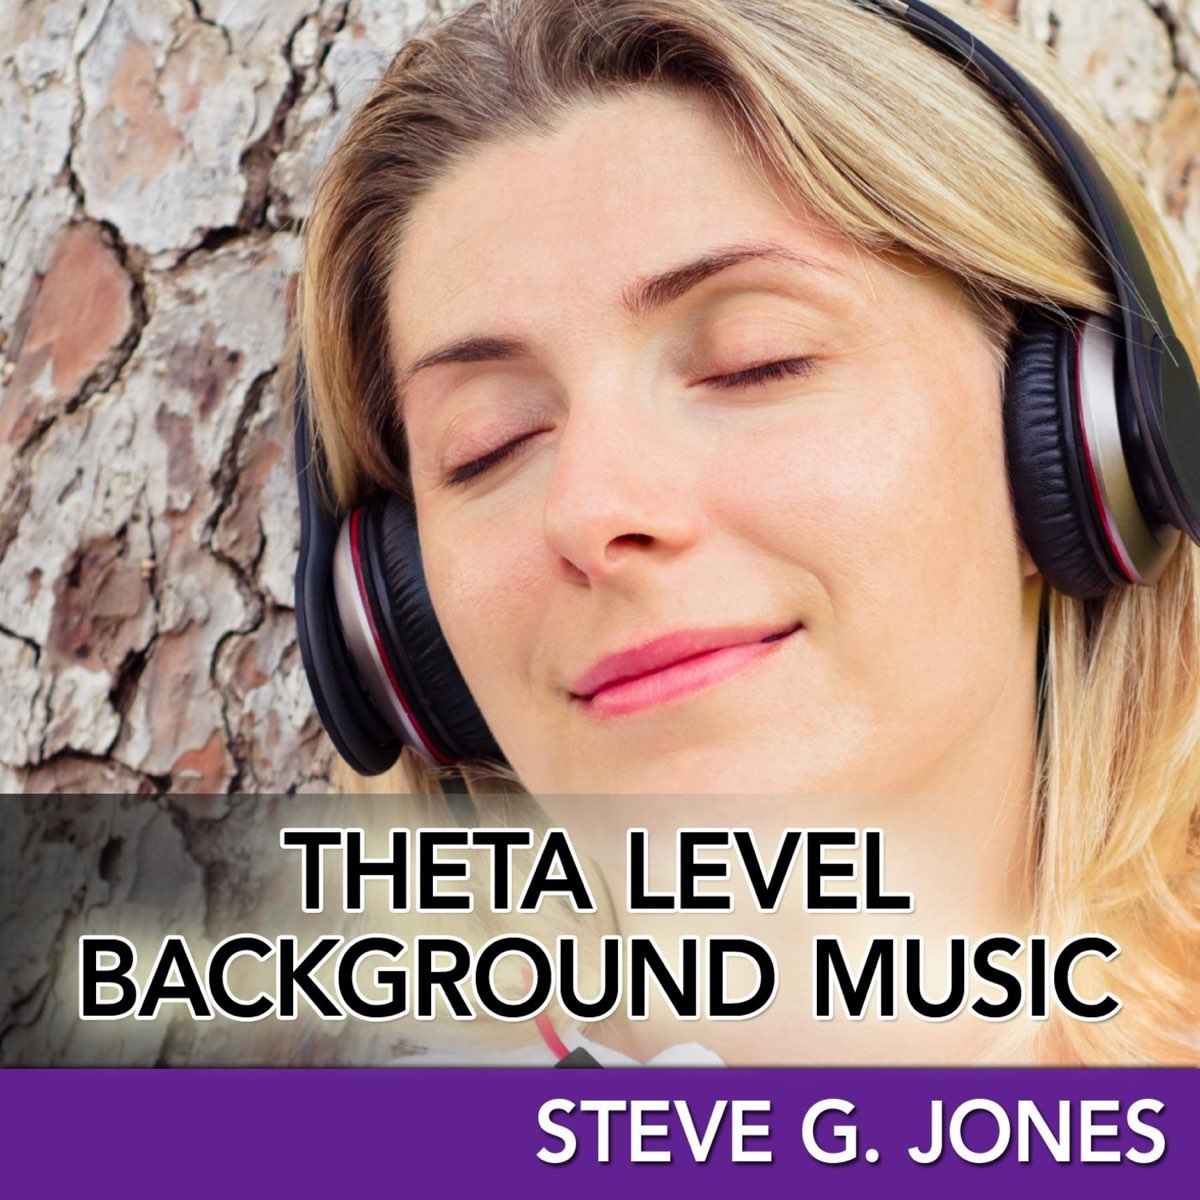 Theta Level Background Music - Album by Steve G. Jones - Apple Music